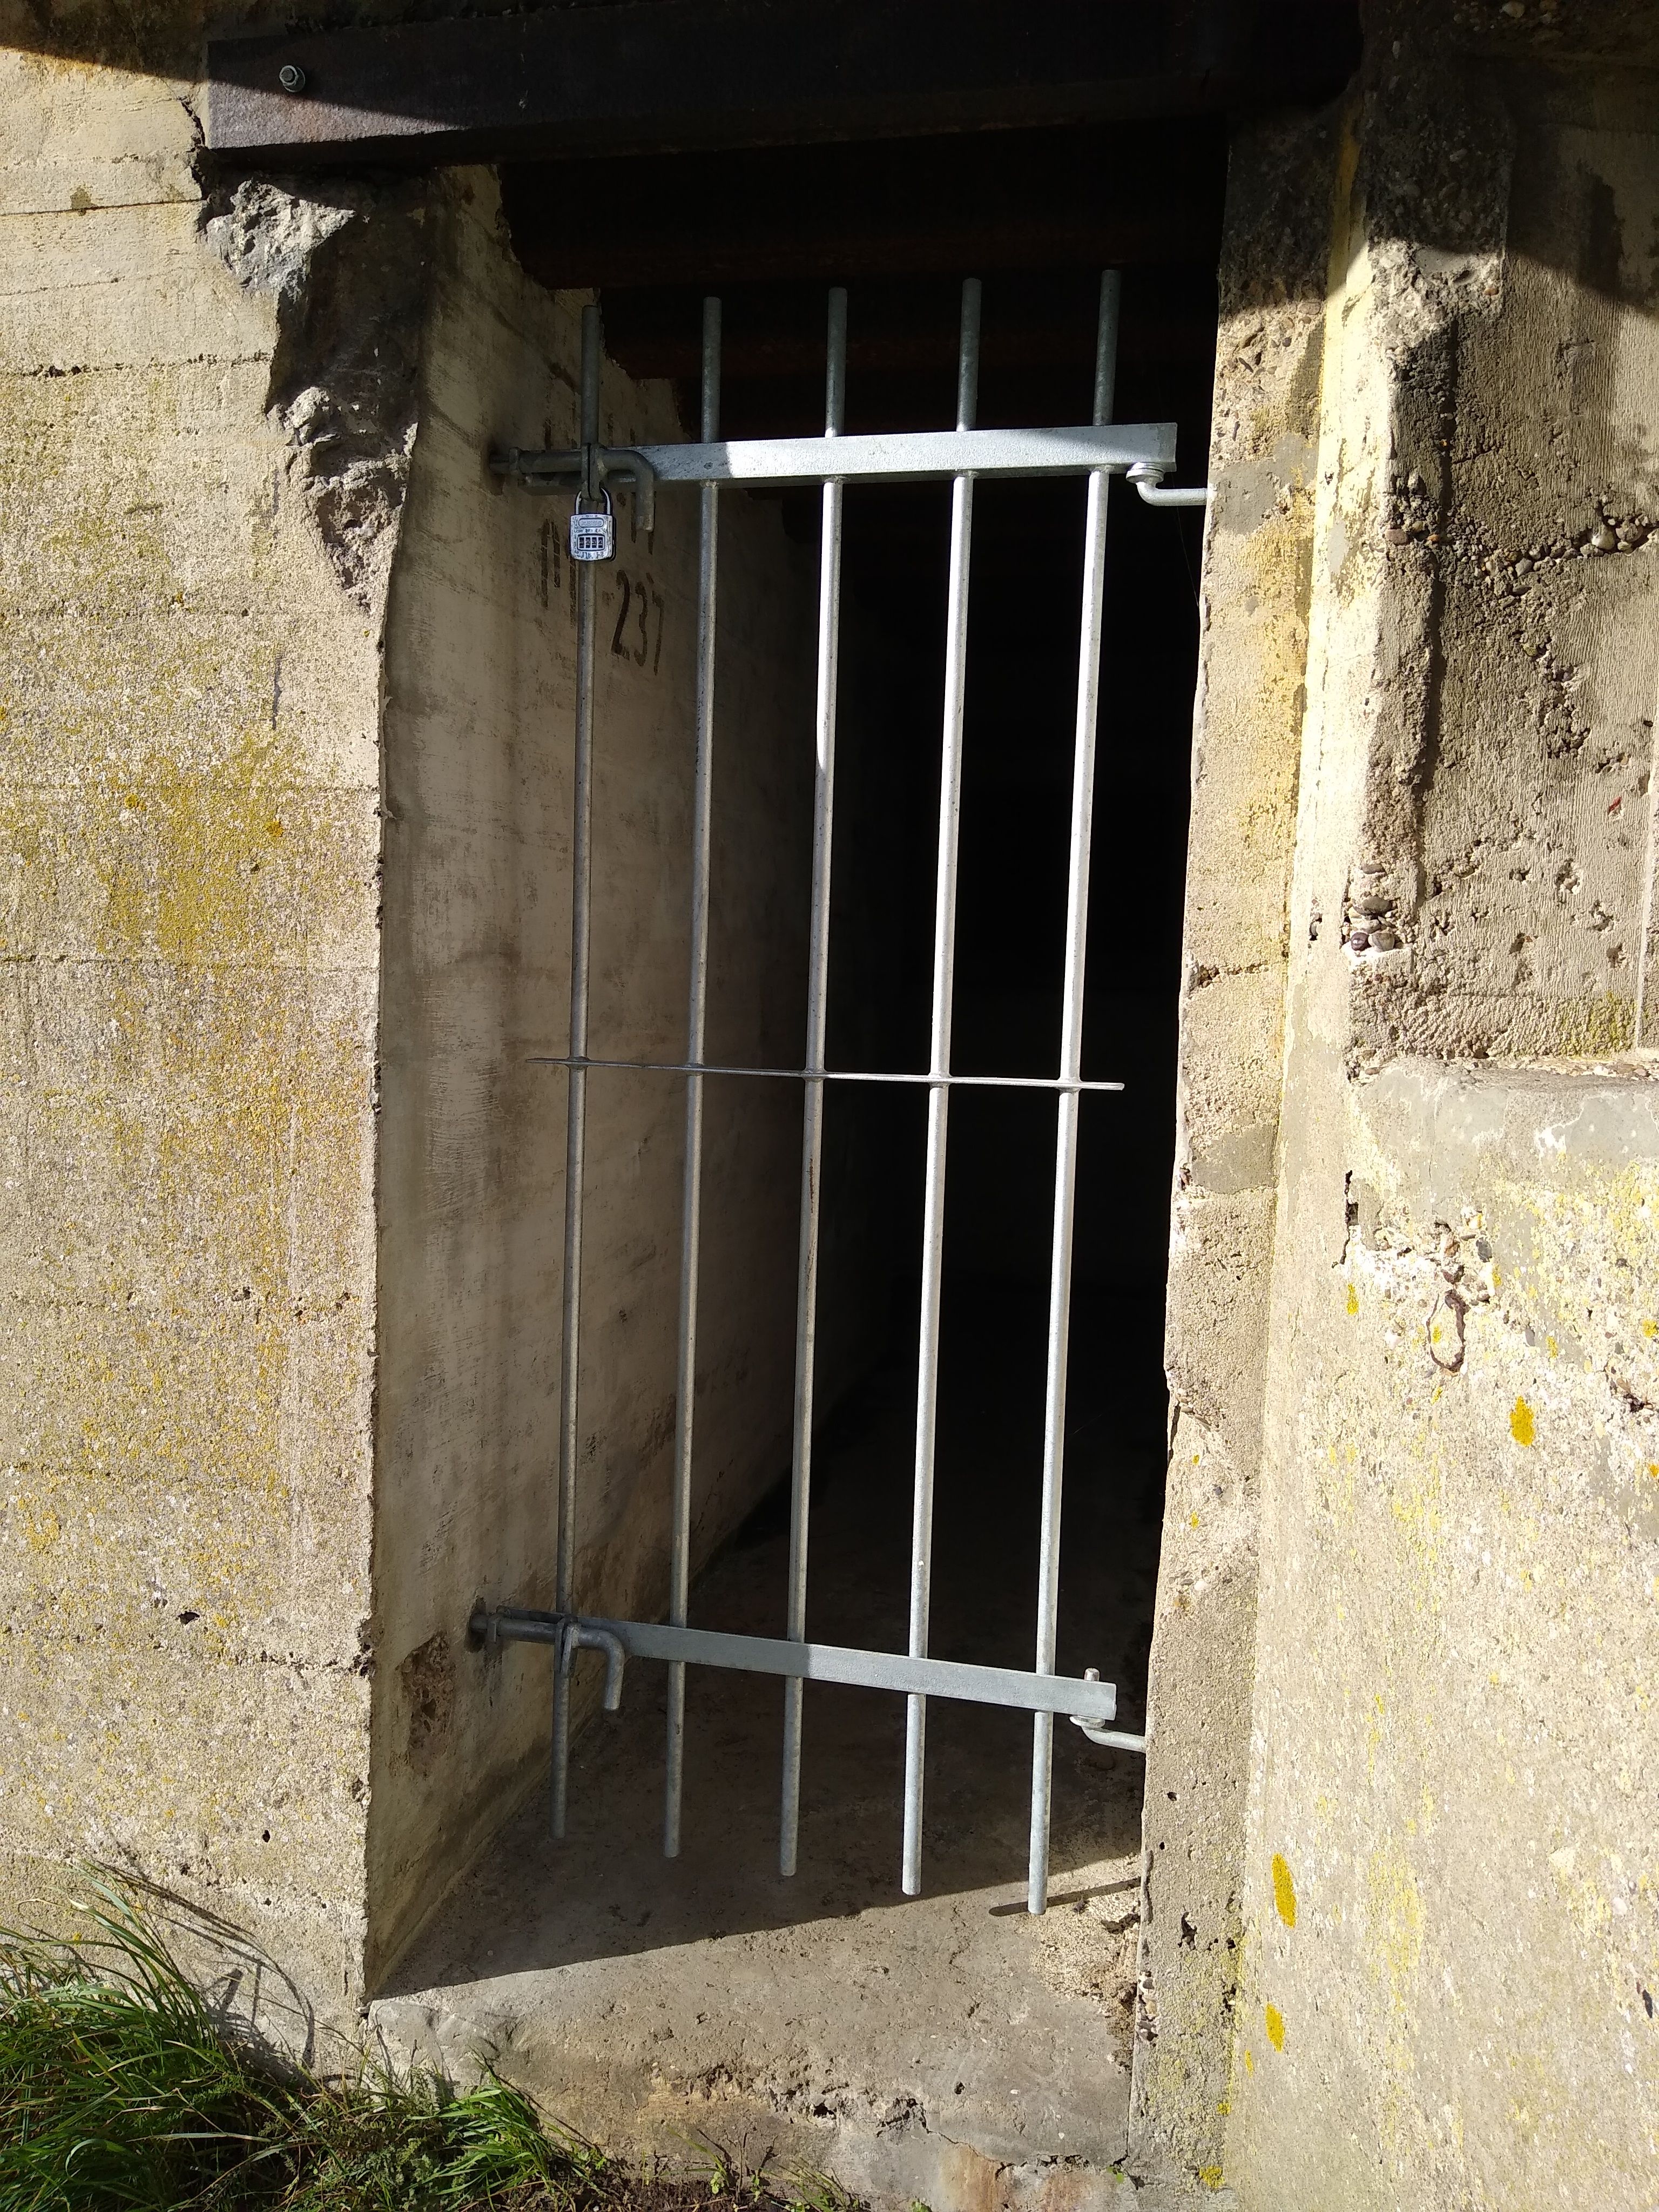 Nieuw hek om bunker o.a. tegen vandalisme te beschermen